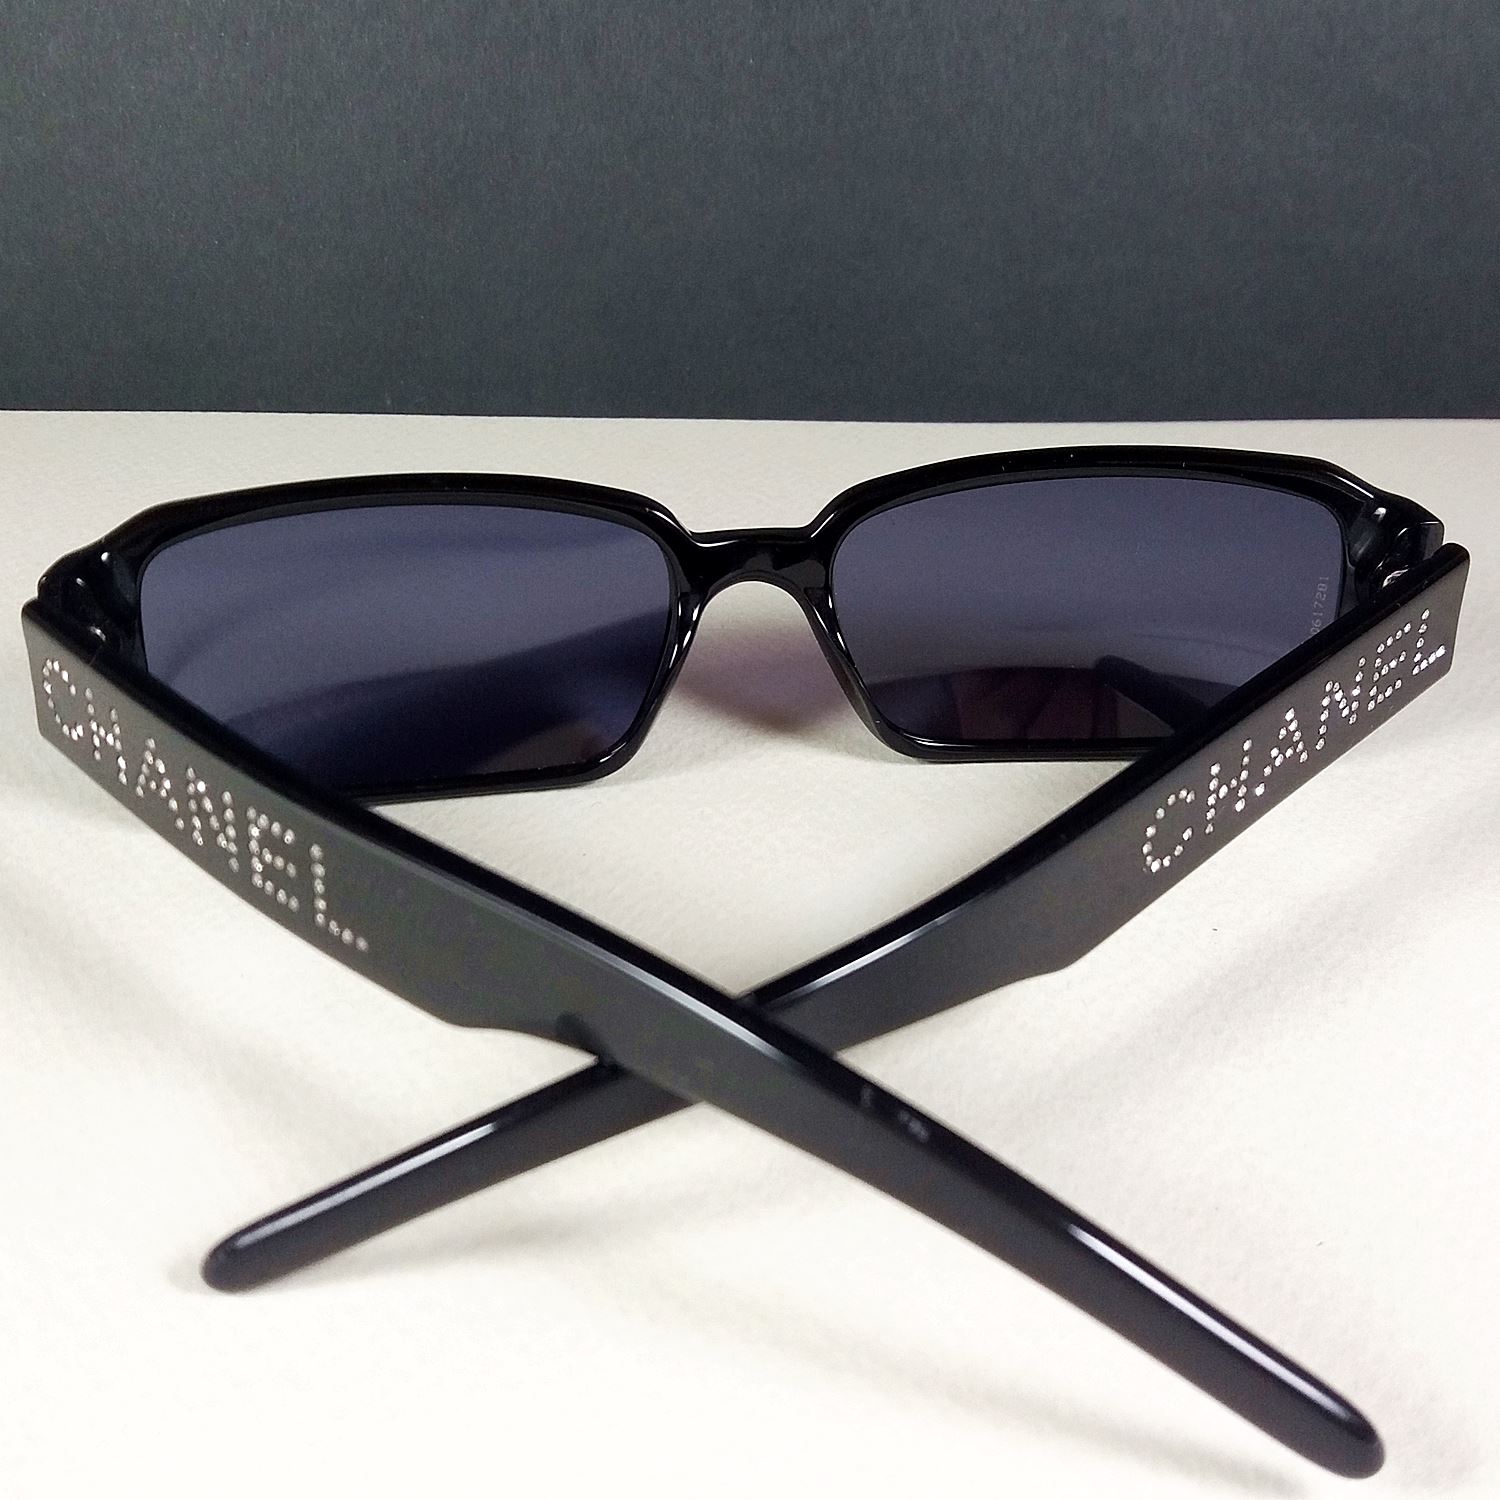 Chanel 5060-B c.501/91 135 Swarovski Full Logo Black Sunglasses in